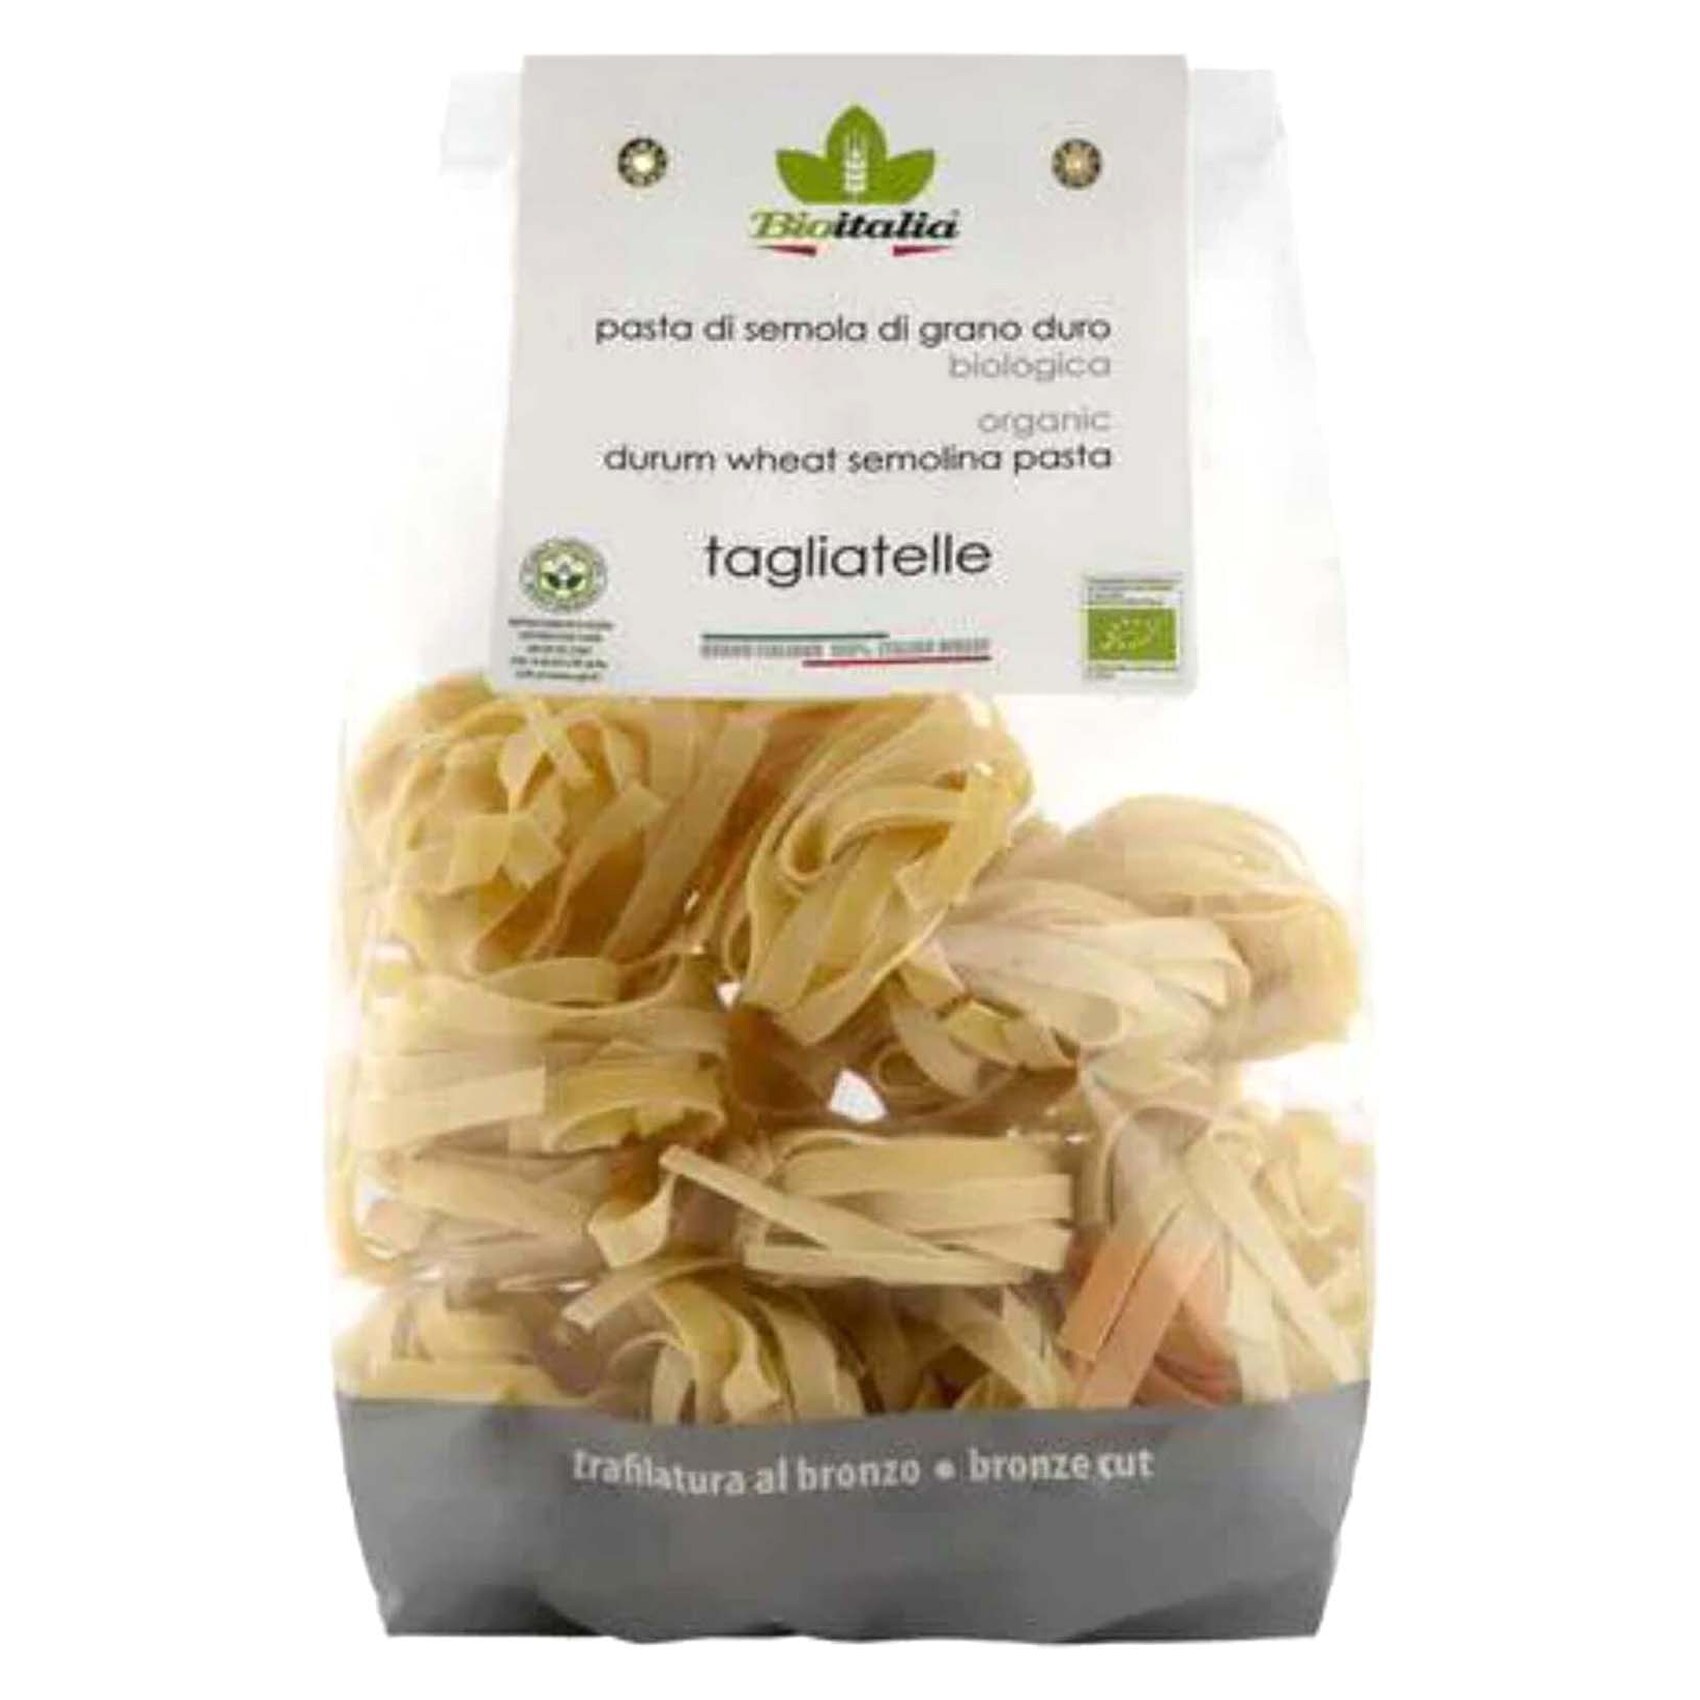 Buy Bioitalia Organic Durum Wheat Semolina Pasta Orzo 500 g with